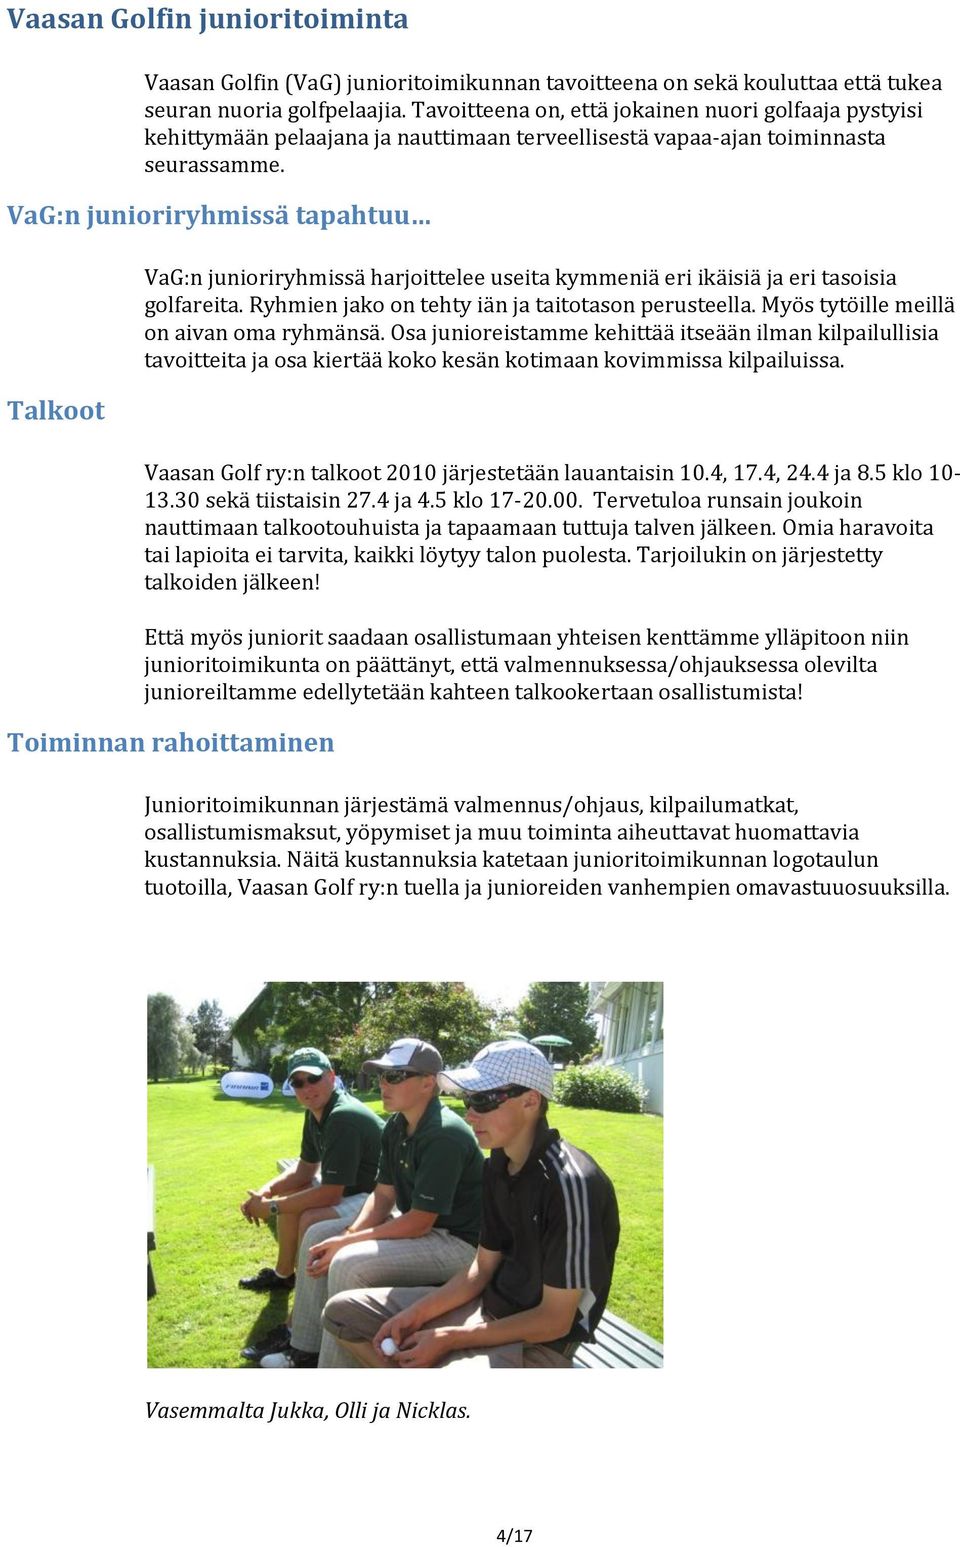 VaG:n junioriryhmissä tapahtuu Talkoot VaG:n junioriryhmissä harjoittelee useita kymmeniä eri ikäisiä ja eri tasoisia golfareita. Ryhmien jako on tehty iän ja taitotason perusteella.